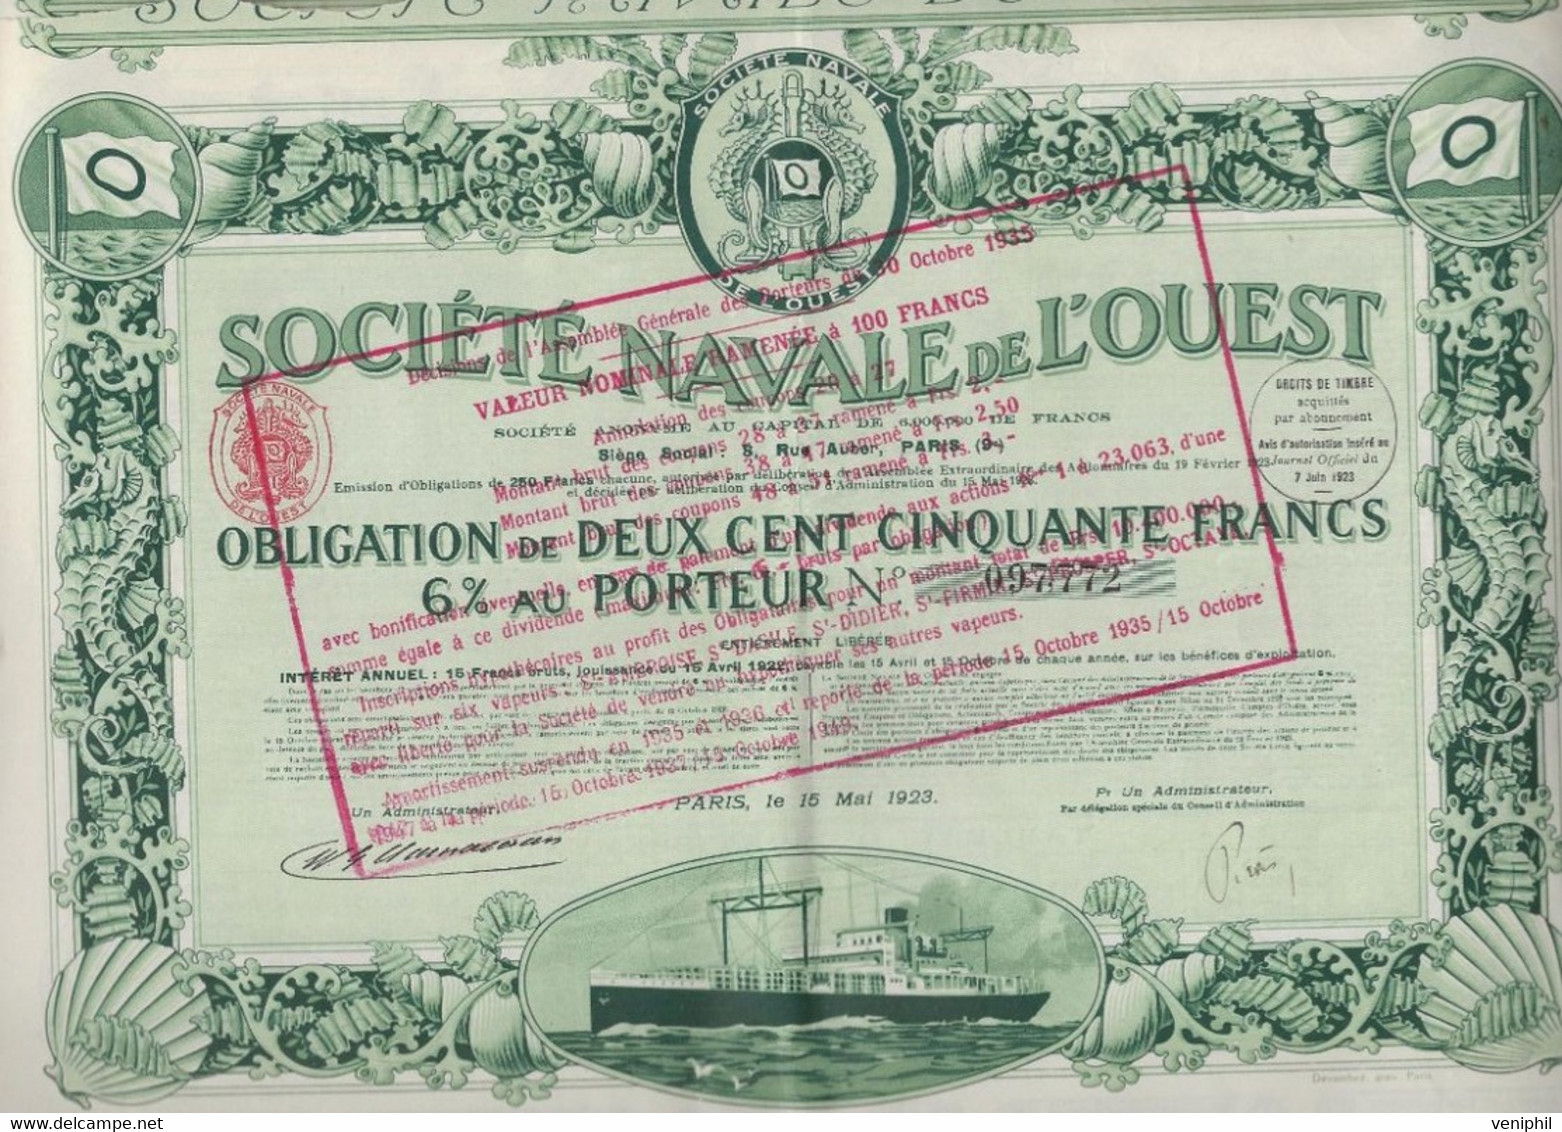 SOCIETE NAVALE DE L'OUEST -  OBLIGATION DE 250 FRS 6% AU PORTEUR - ANNEE 1923 - Schiffahrt